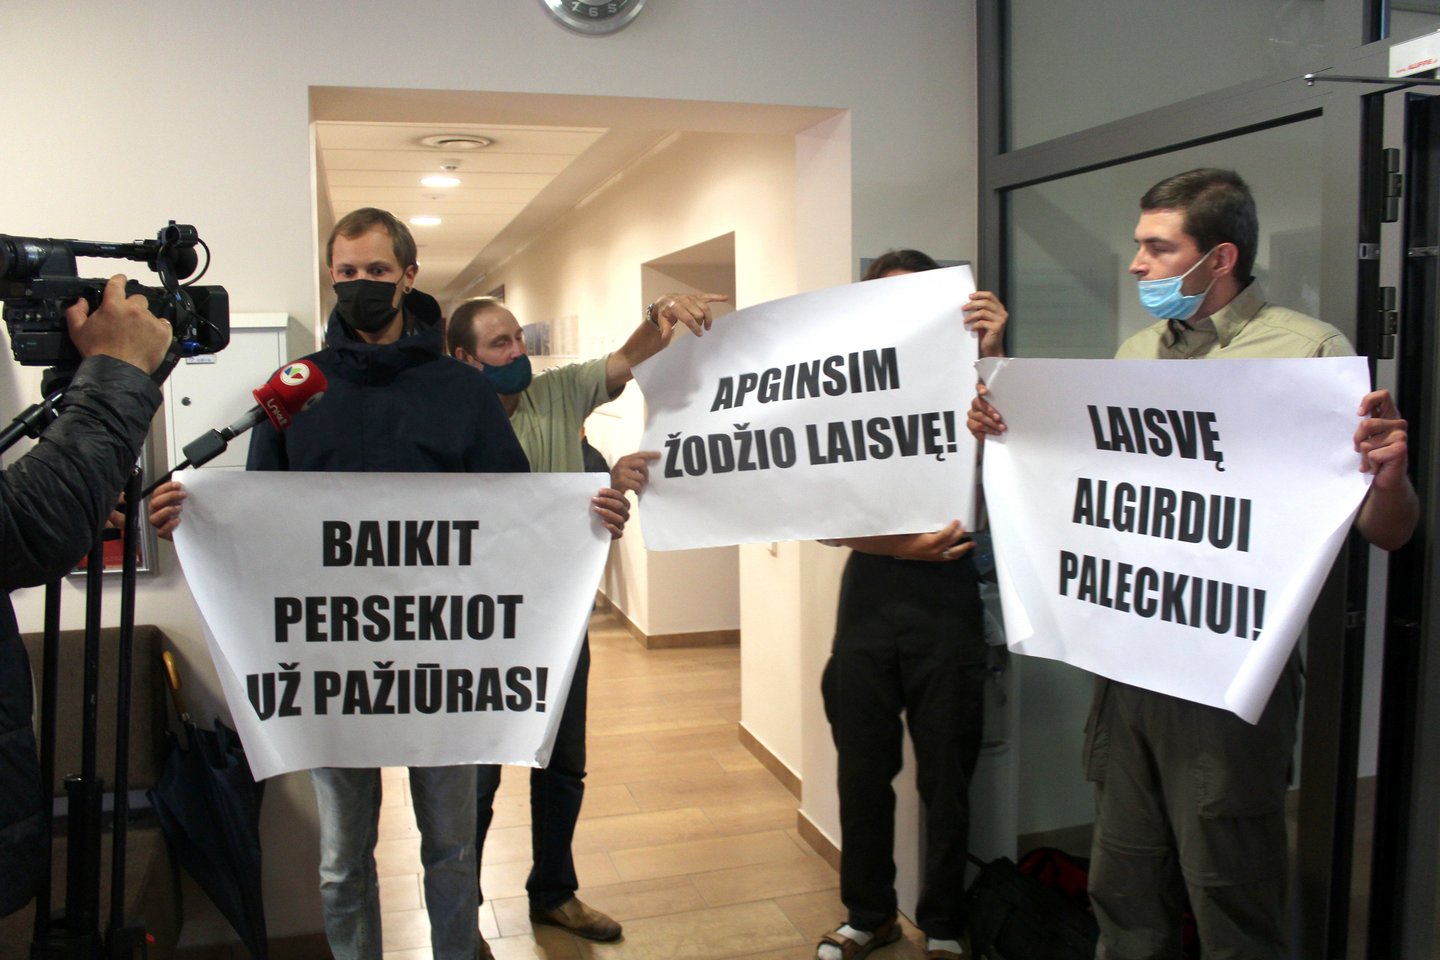   Į teismą atėjo ir A.Paleckio šalininkai su plakatais.<br> R. Vitkaus nuotr. 